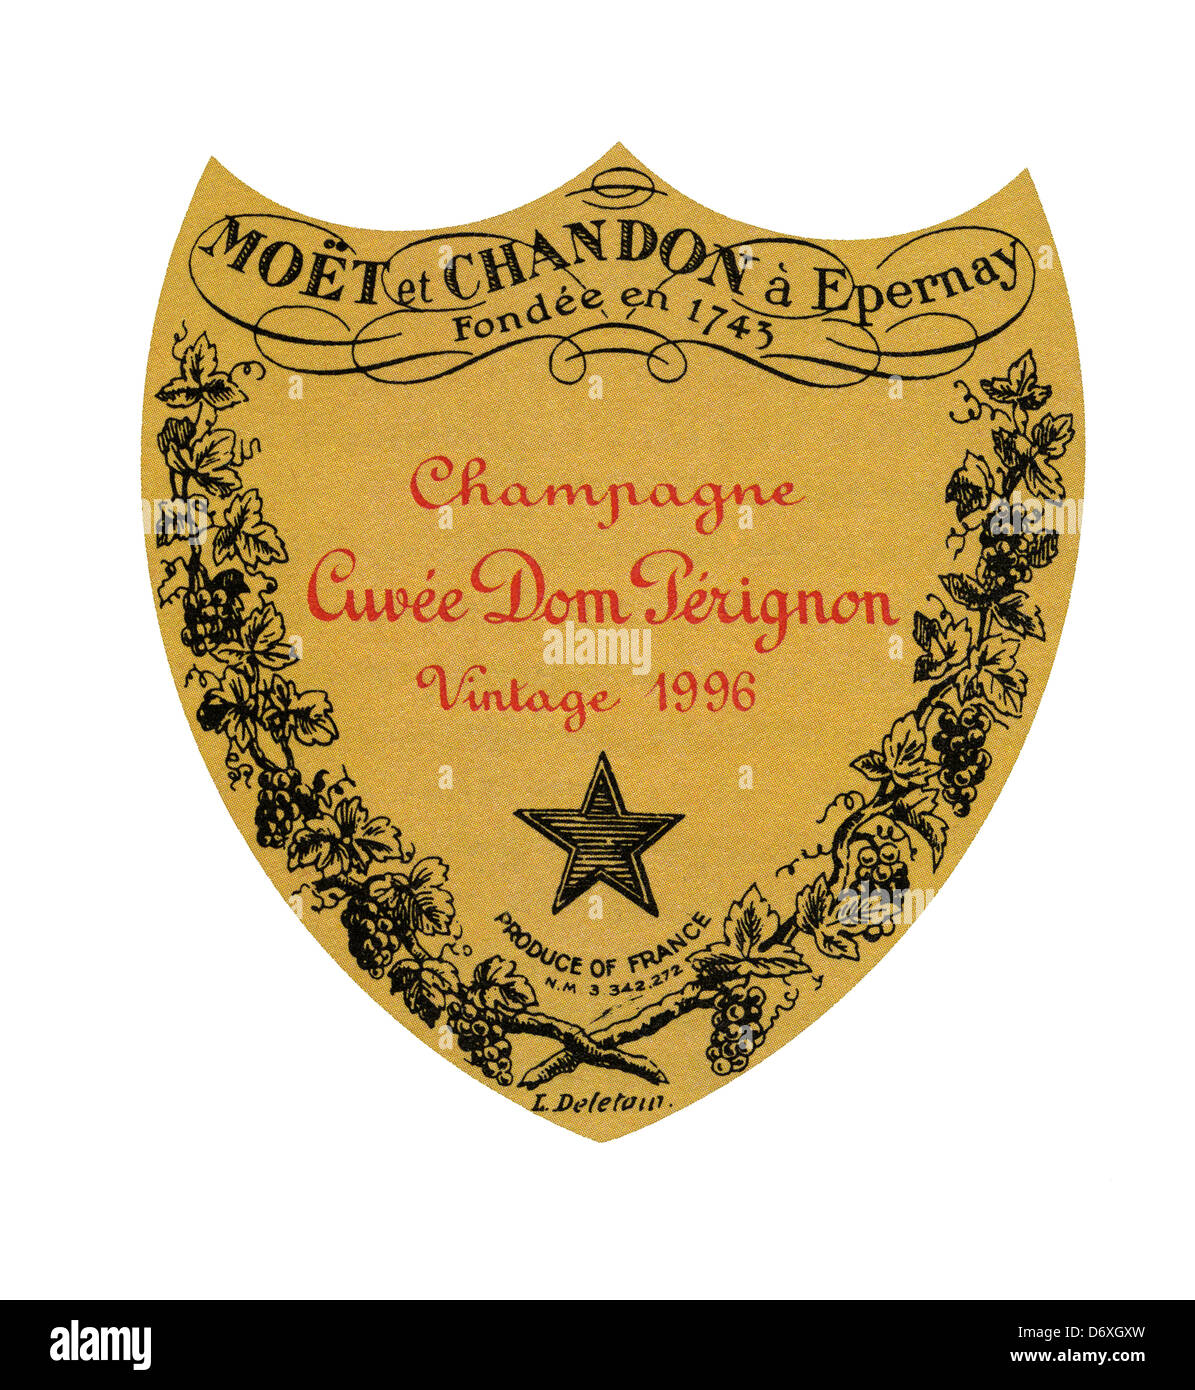 L'étiquette du flacon de l'année exceptionnelle 1996 Dom Perignon vintage de luxe champagne sur fond blanc Banque D'Images